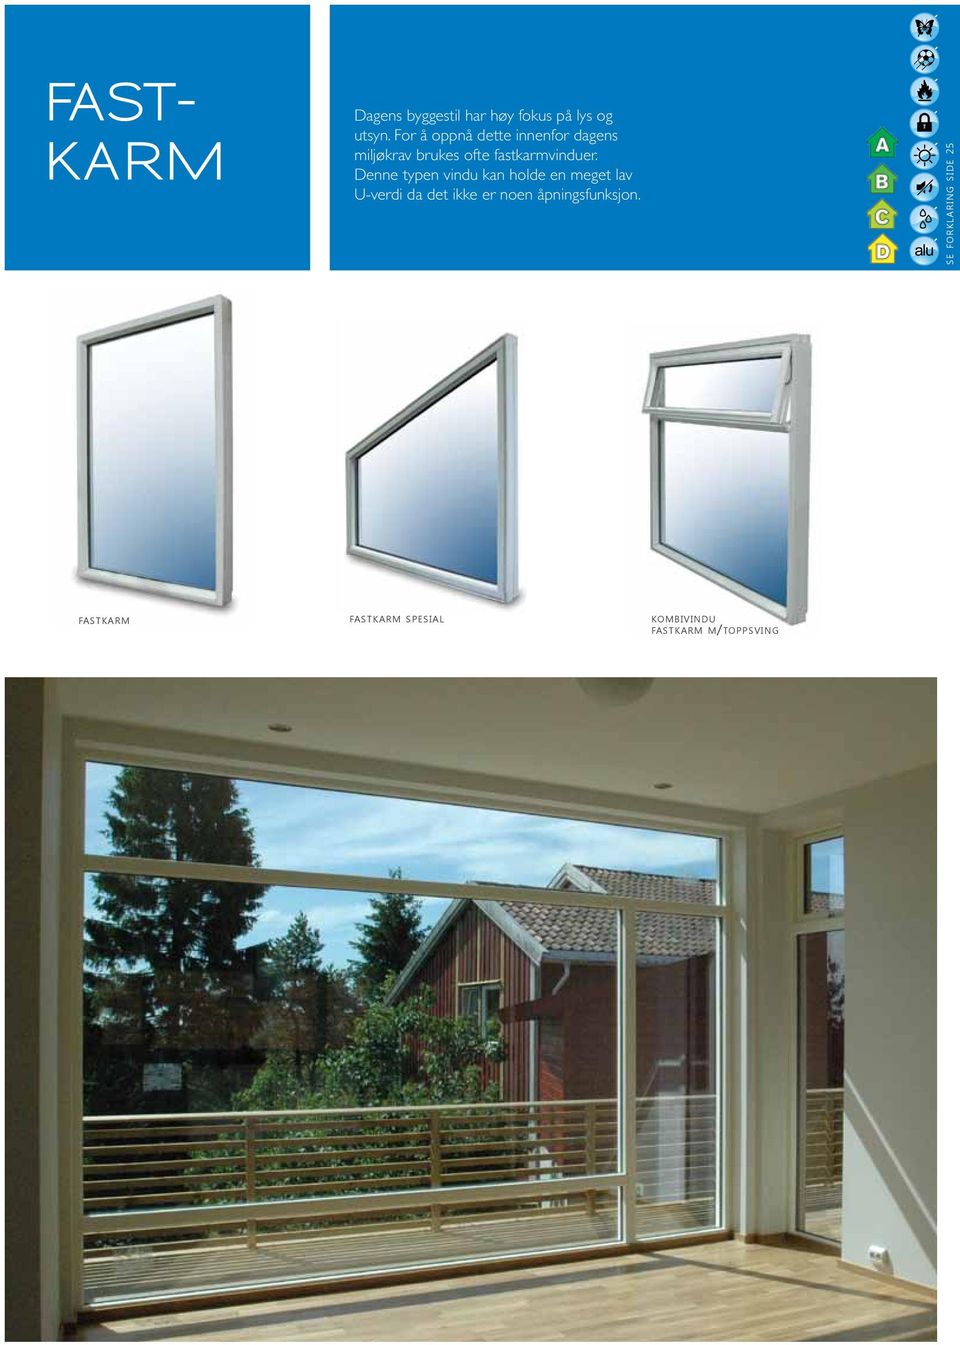 Denne typen vindu kan holde en meget lav U-verdi da det ikke er noen åpningsfunksjon.